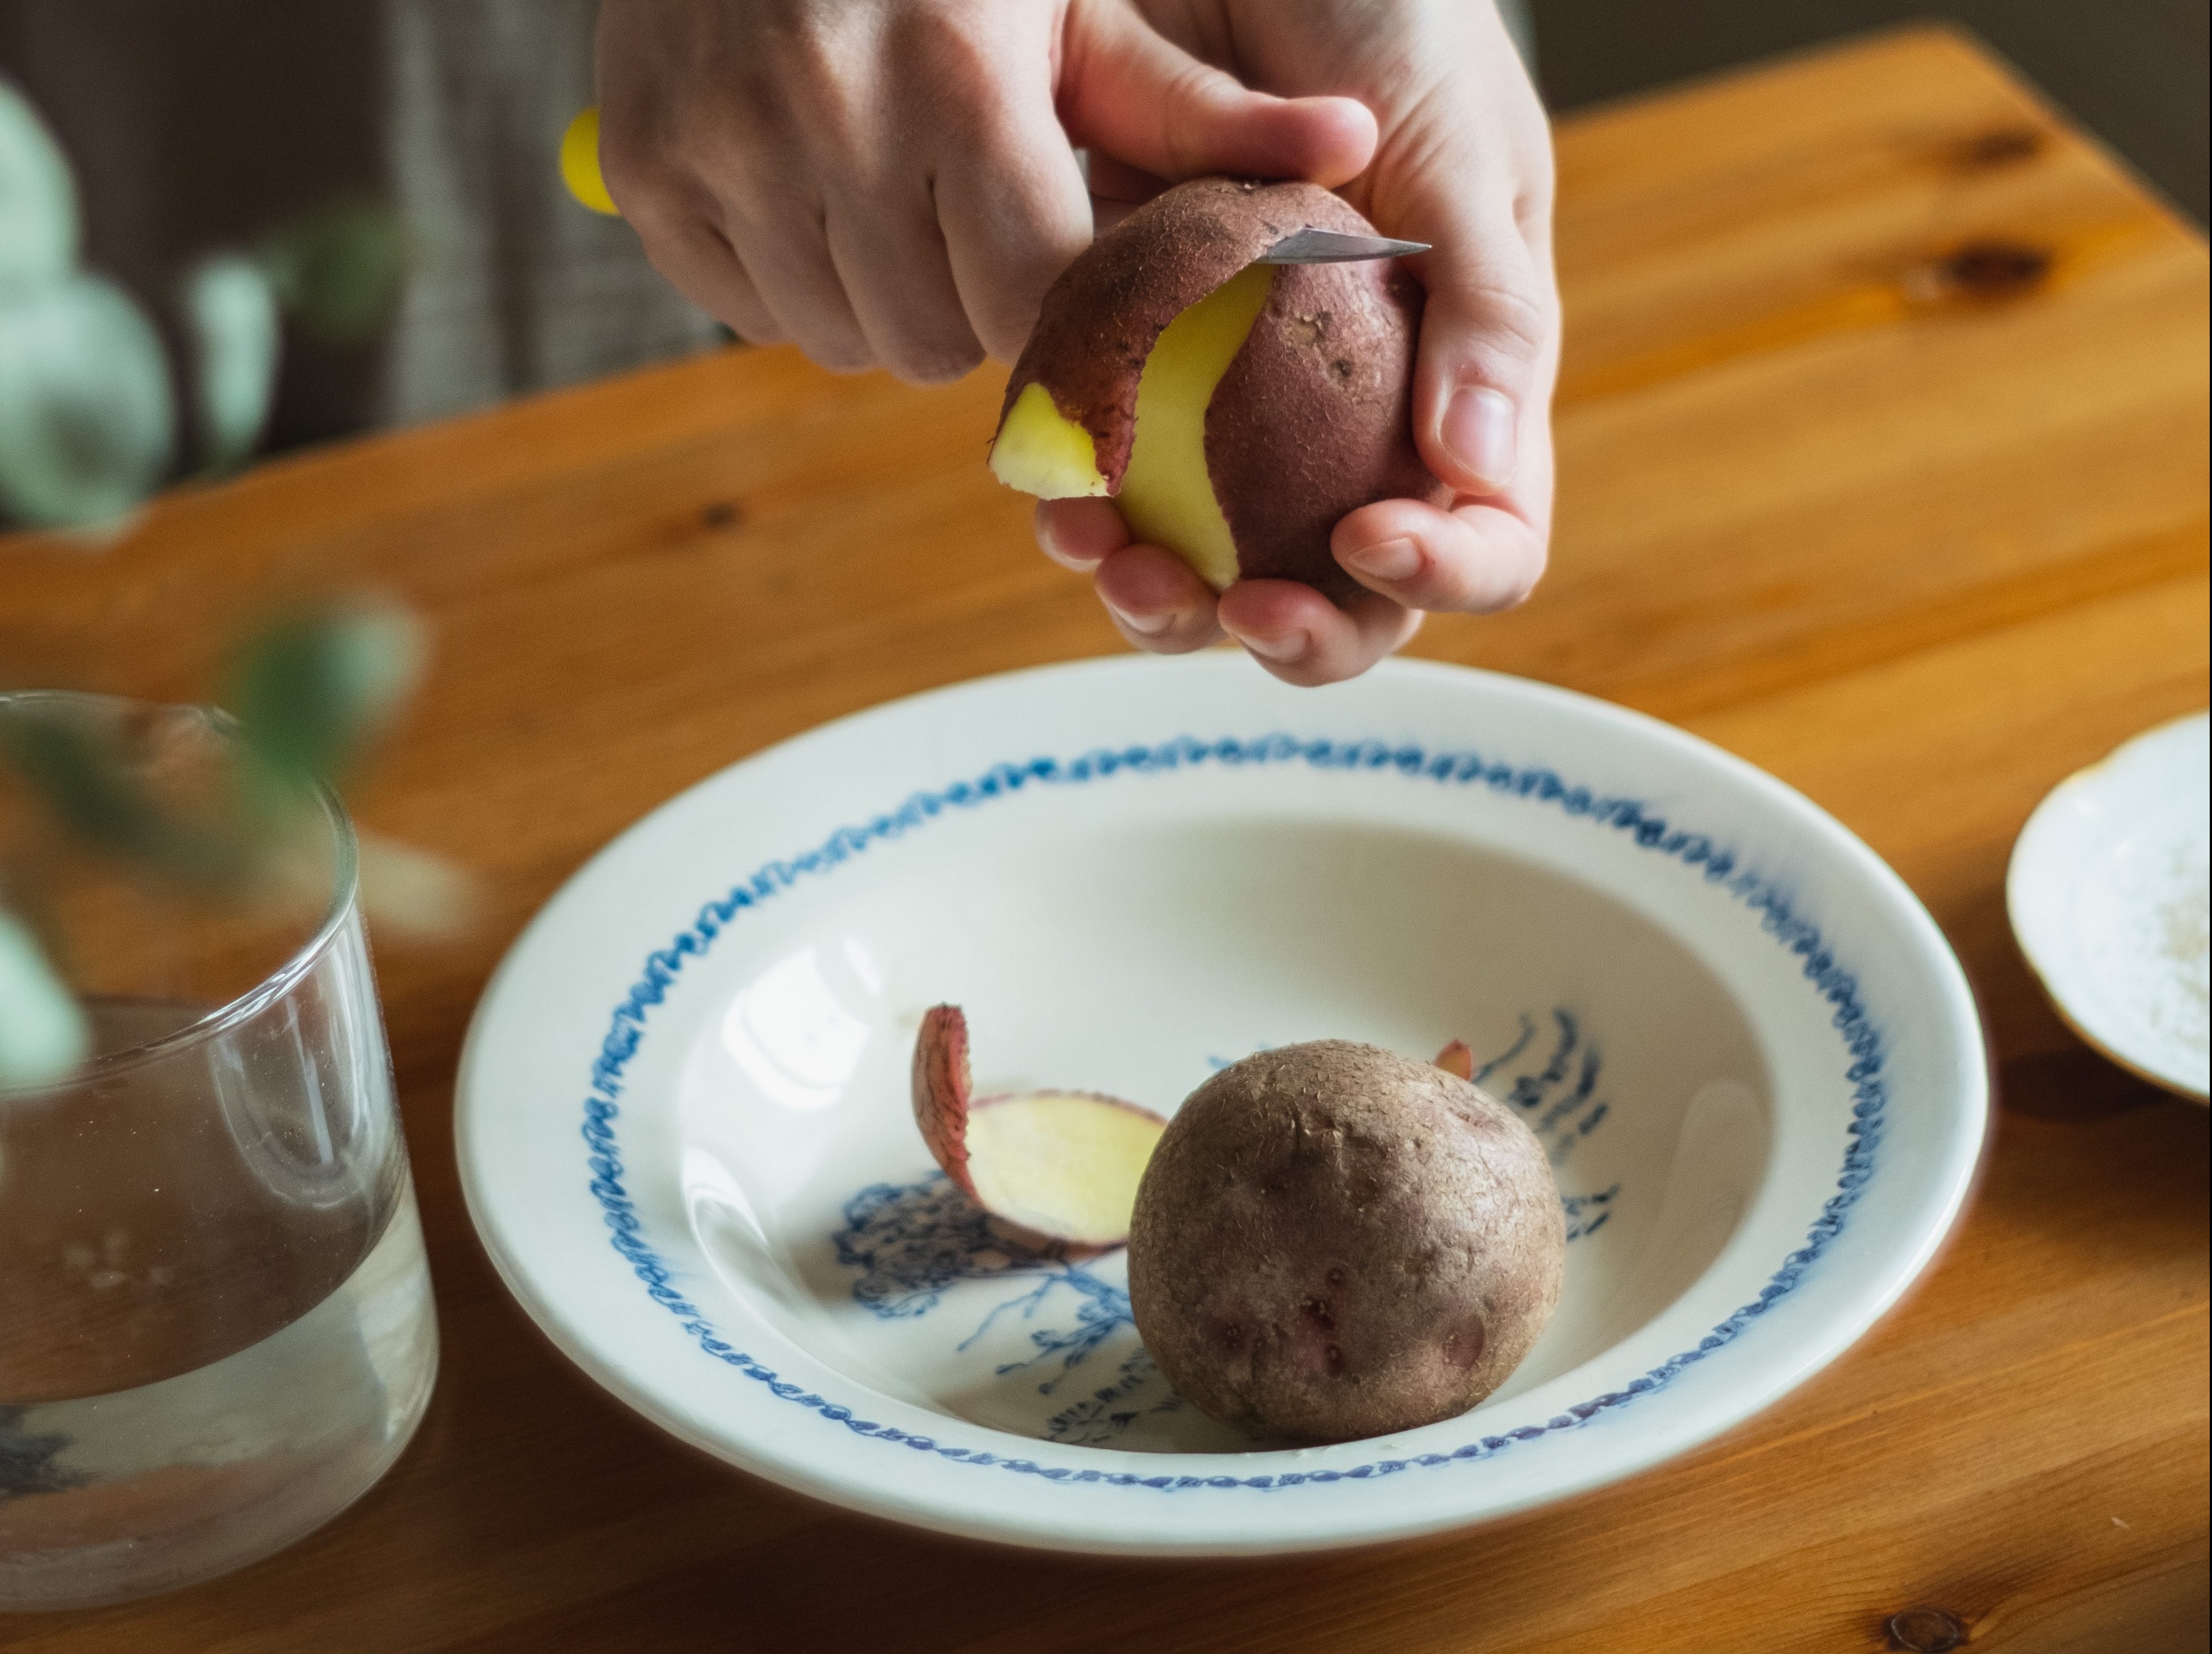 Peeling potatoes. Image: Didi Miam / Unsplash